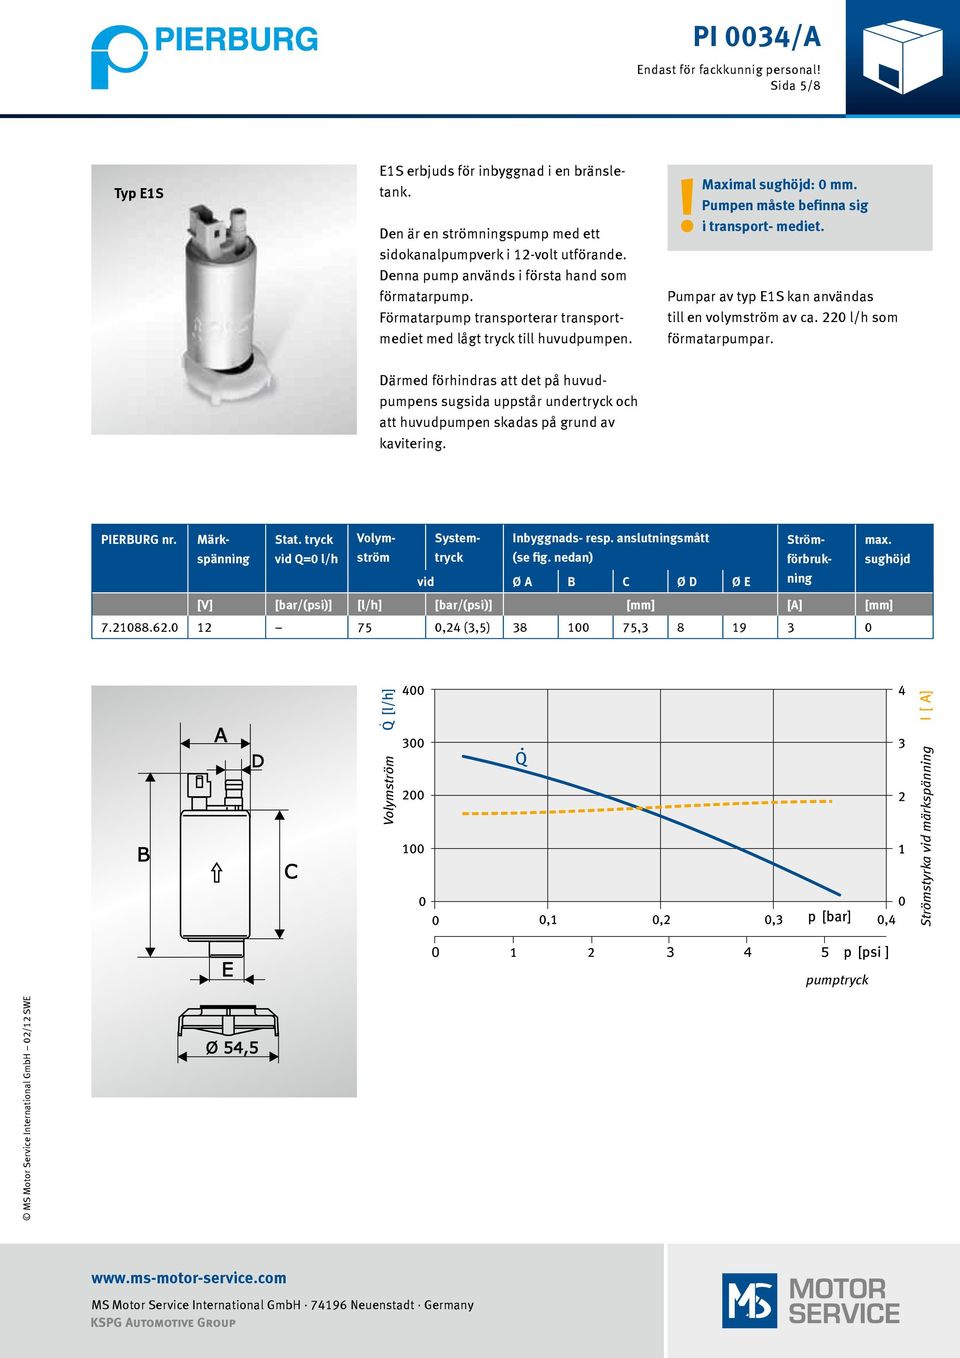 Pumpar av typ E1S kan användas till en volymström av ca. 220 l/h som förmatarpumpar.